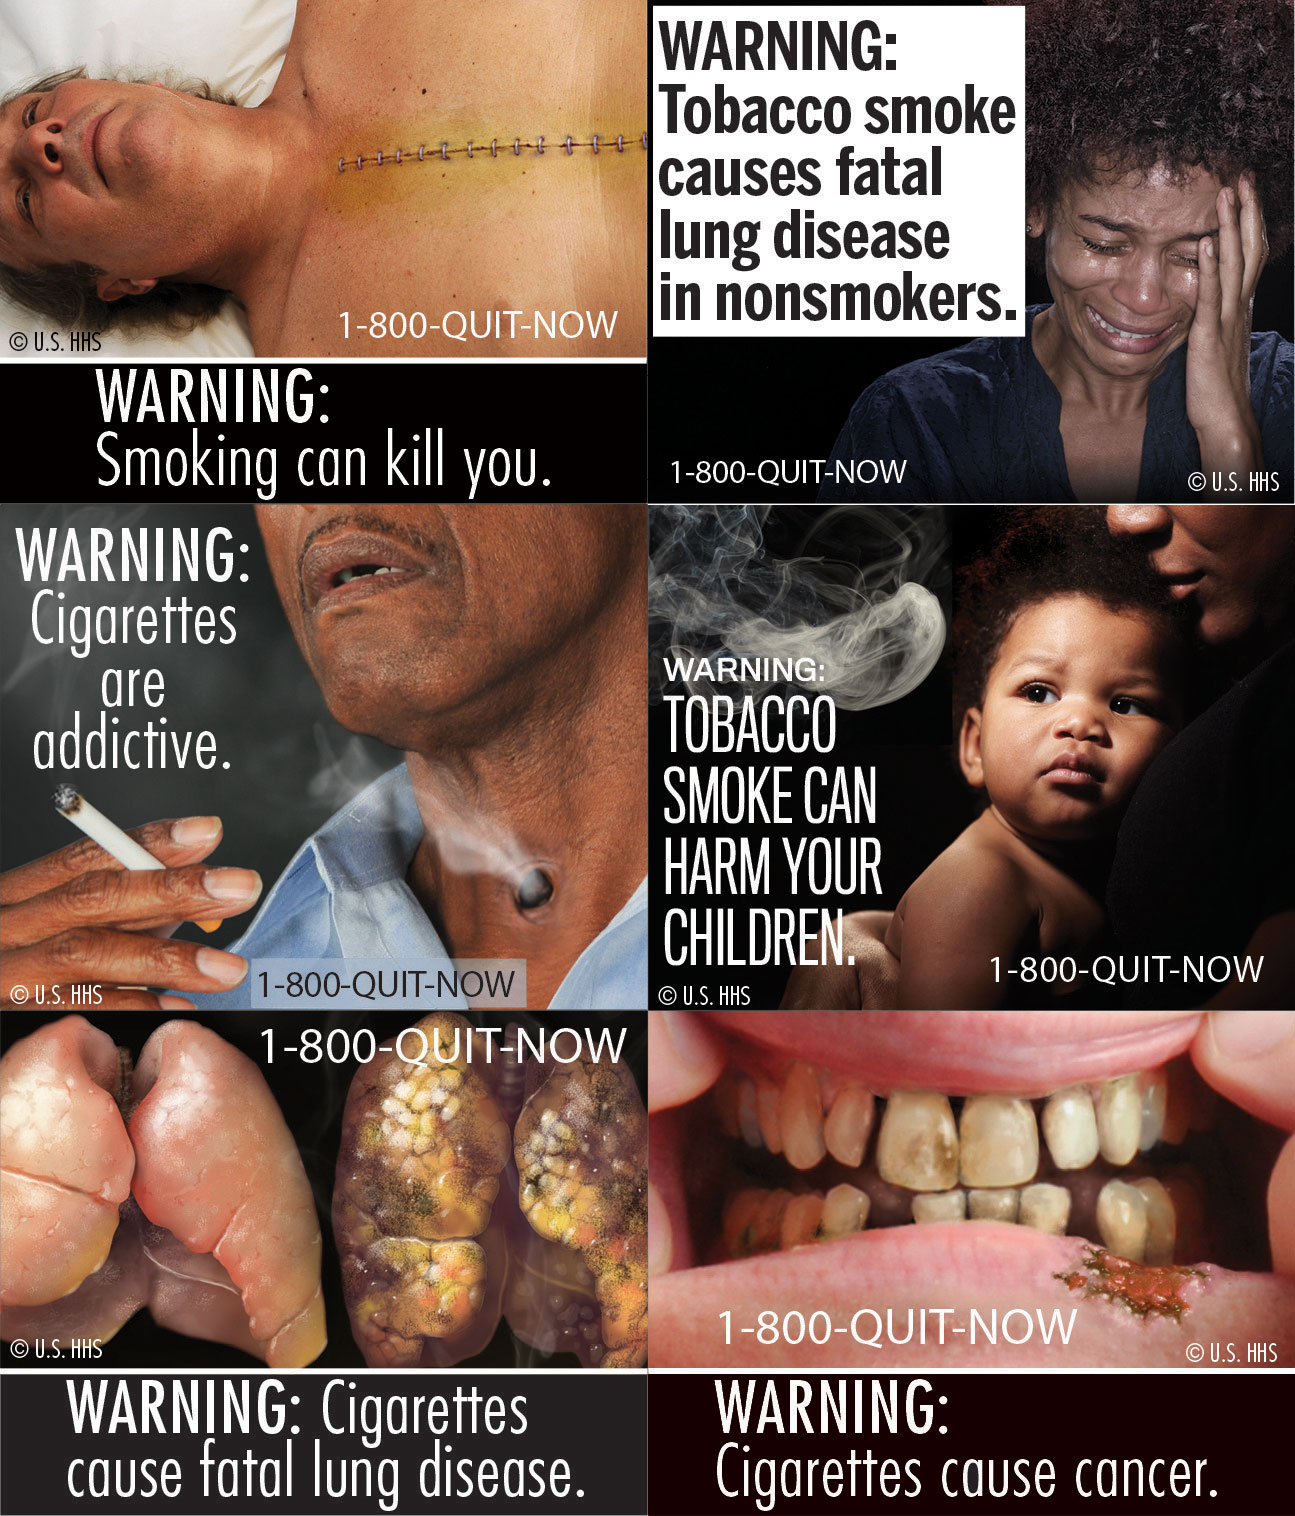 Anti-smoking ads